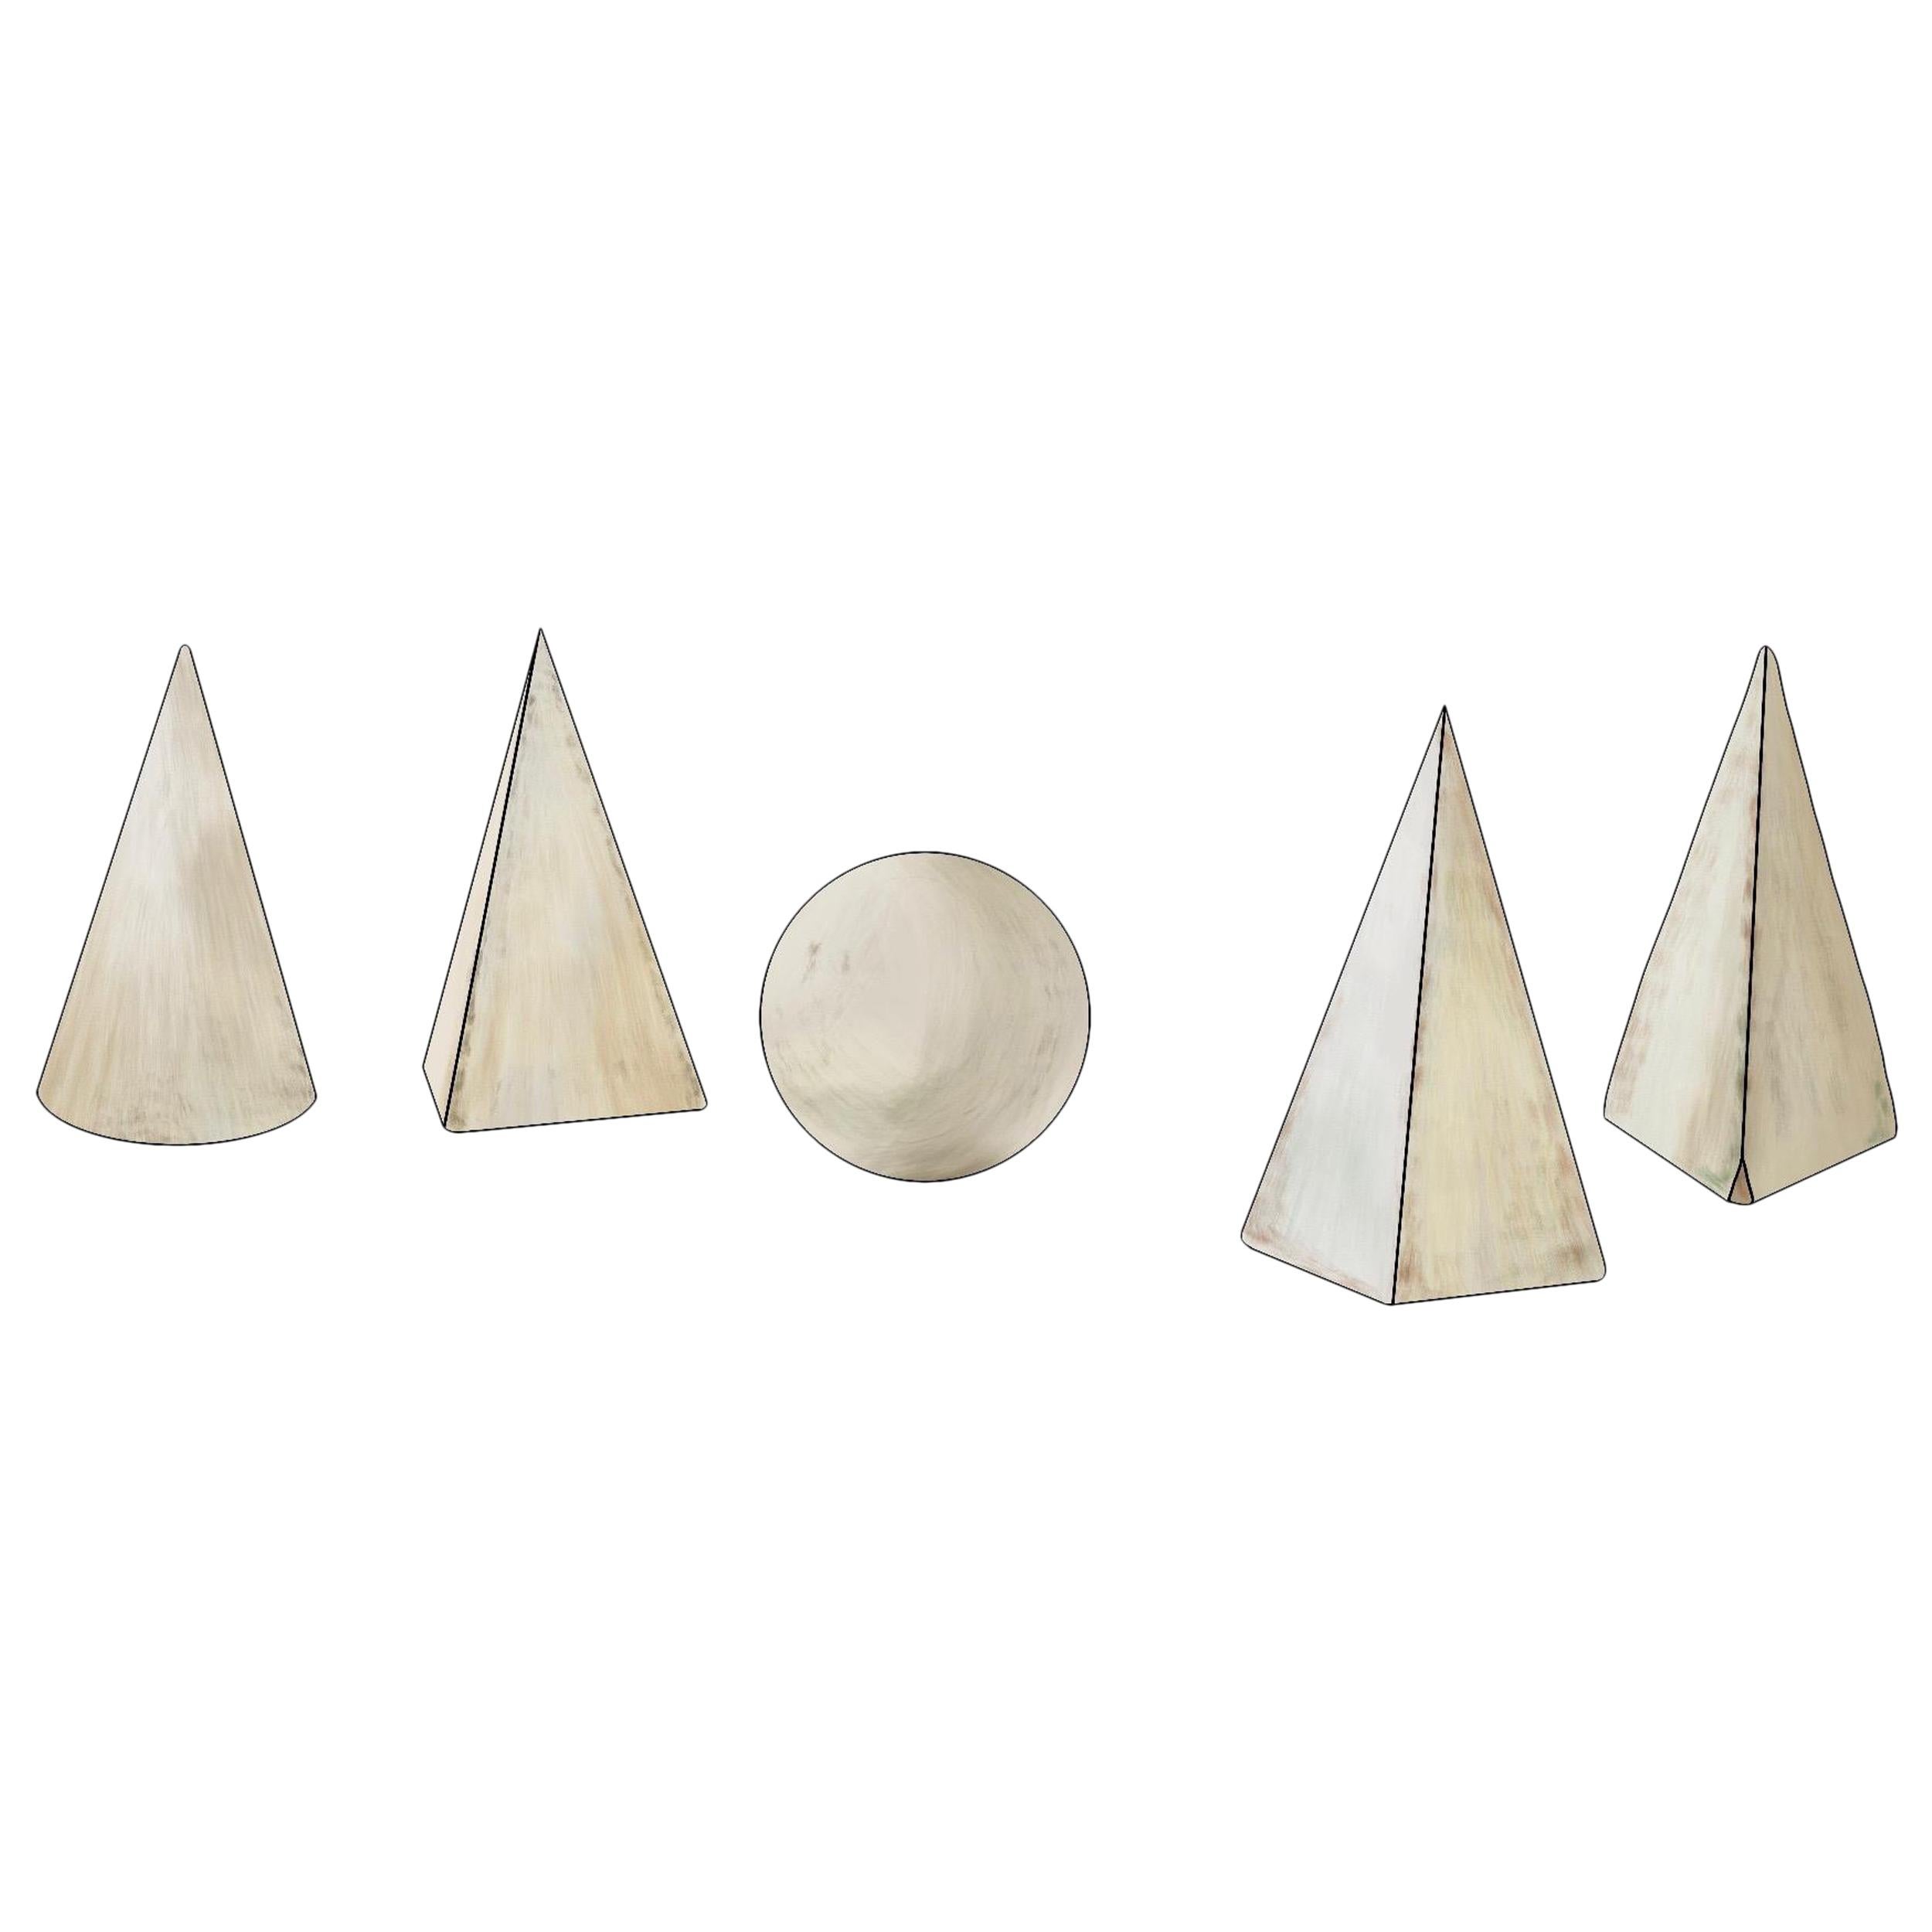 Set von 5 weiß lackierten geometrischen Formen aus Holz